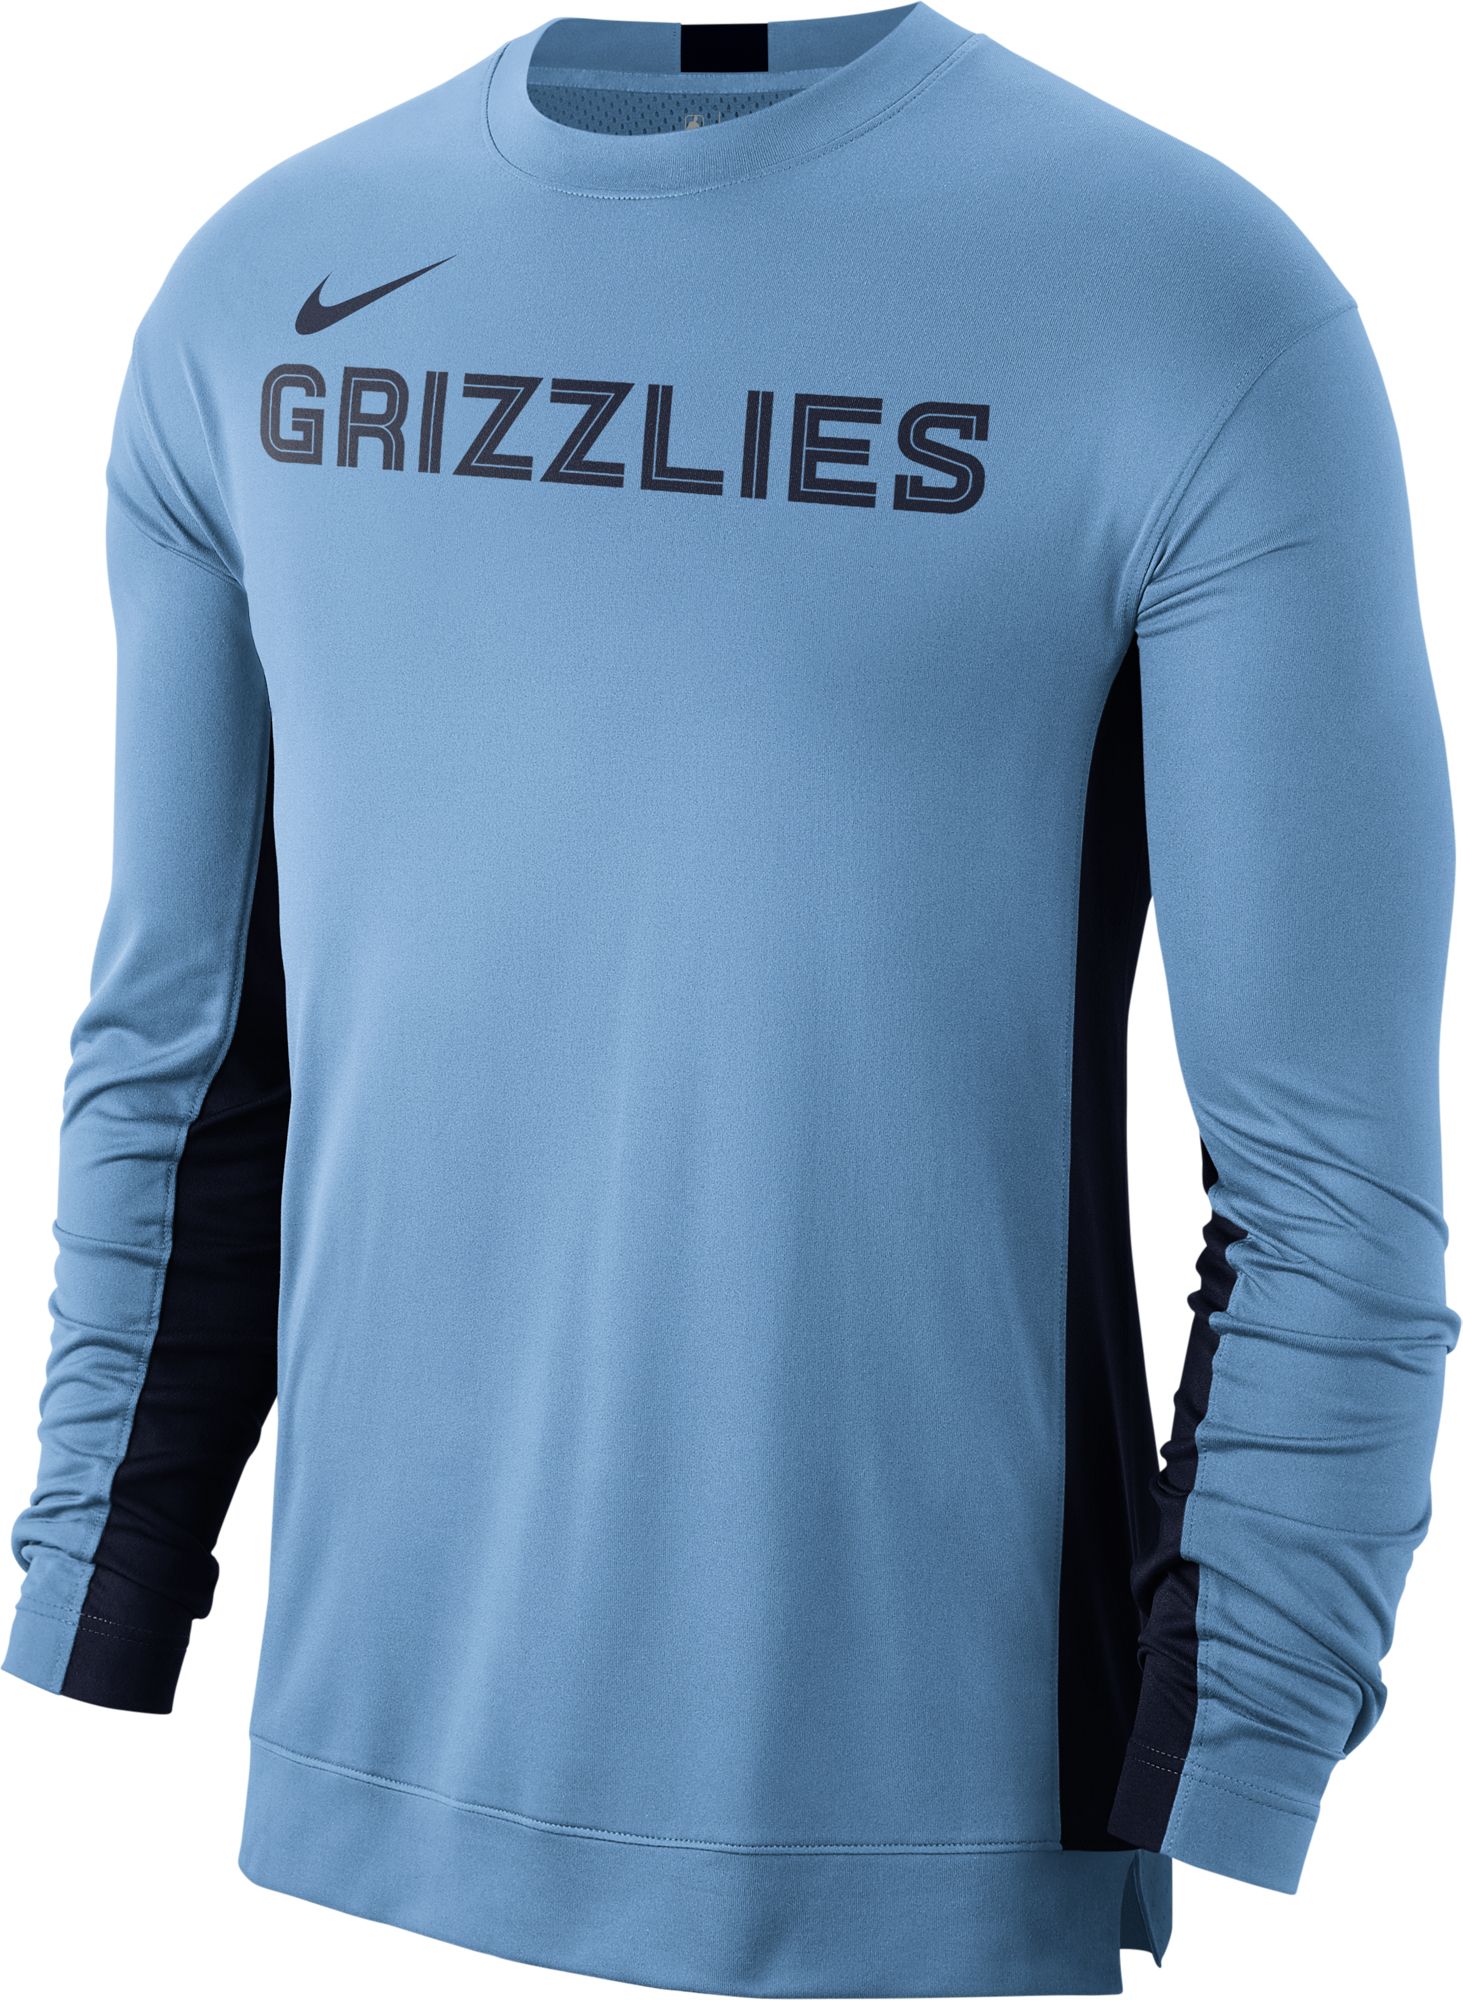 memphis grizzlies t shirts